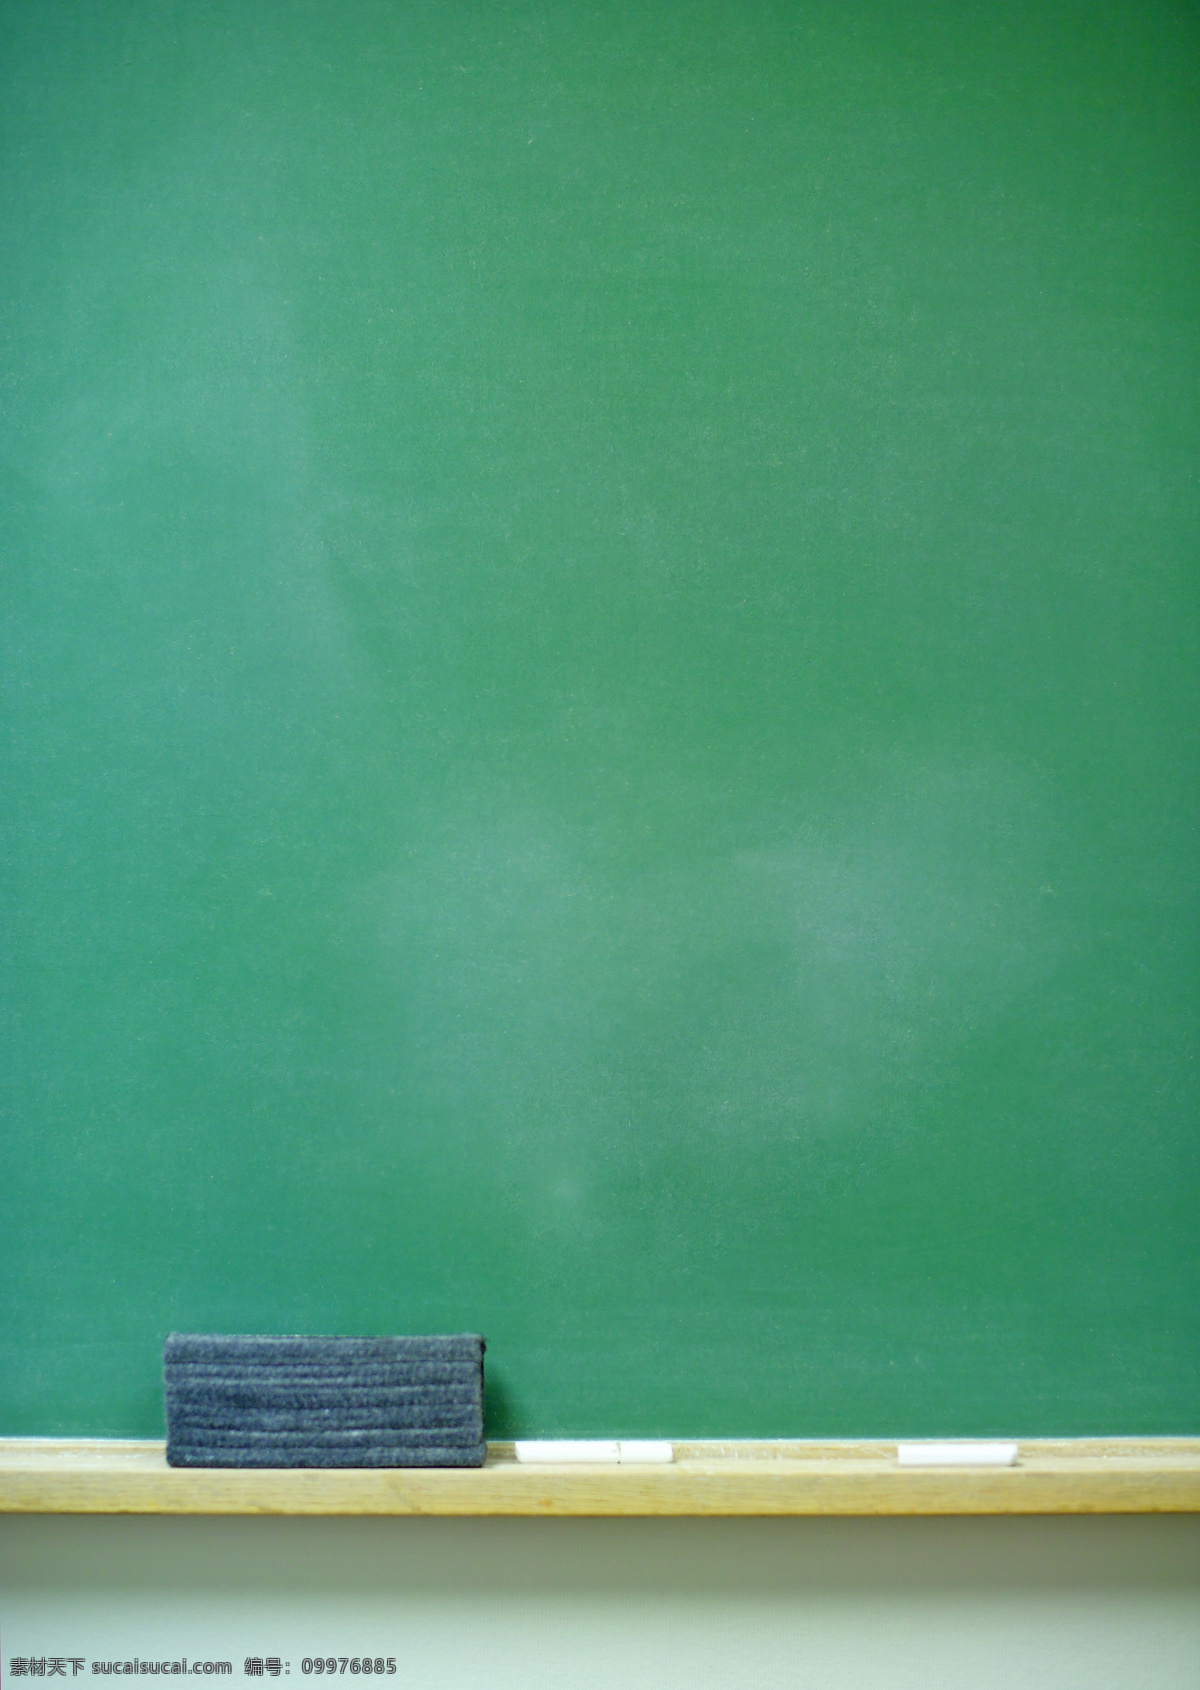 黑板 學校 板擦 綠色黑板 寫字 文化艺术